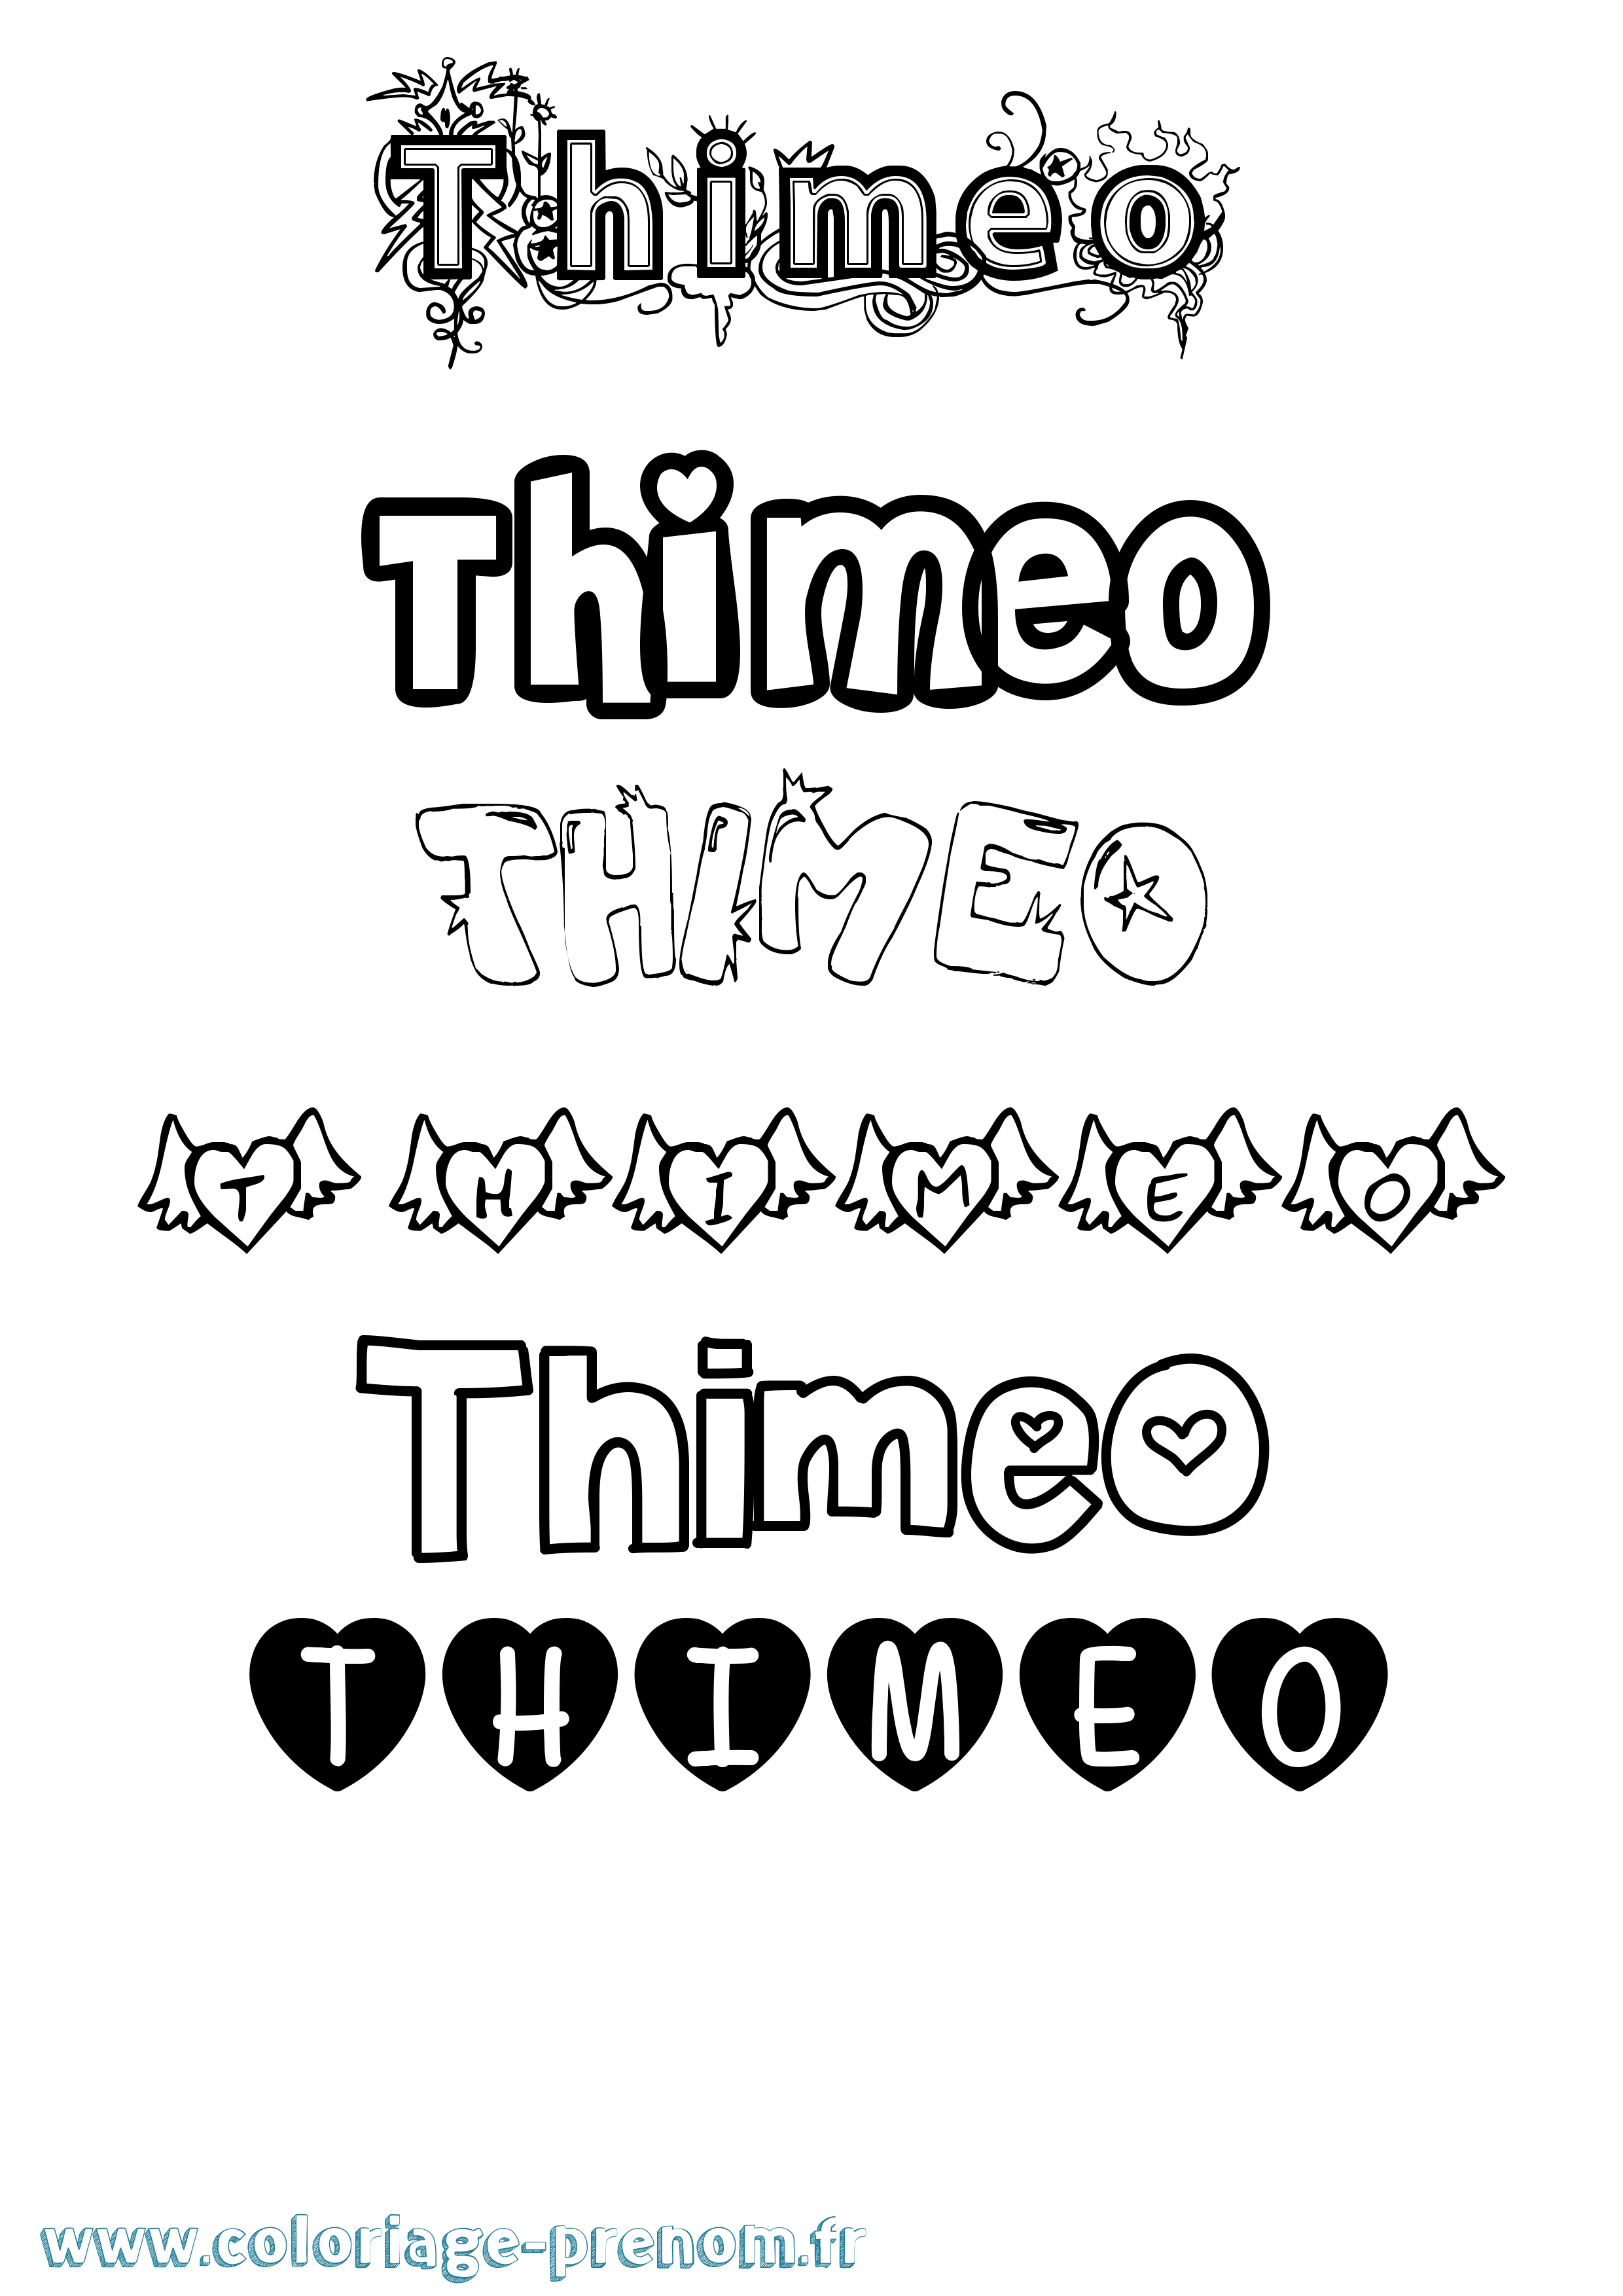 Coloriage prénom Thimeo Girly